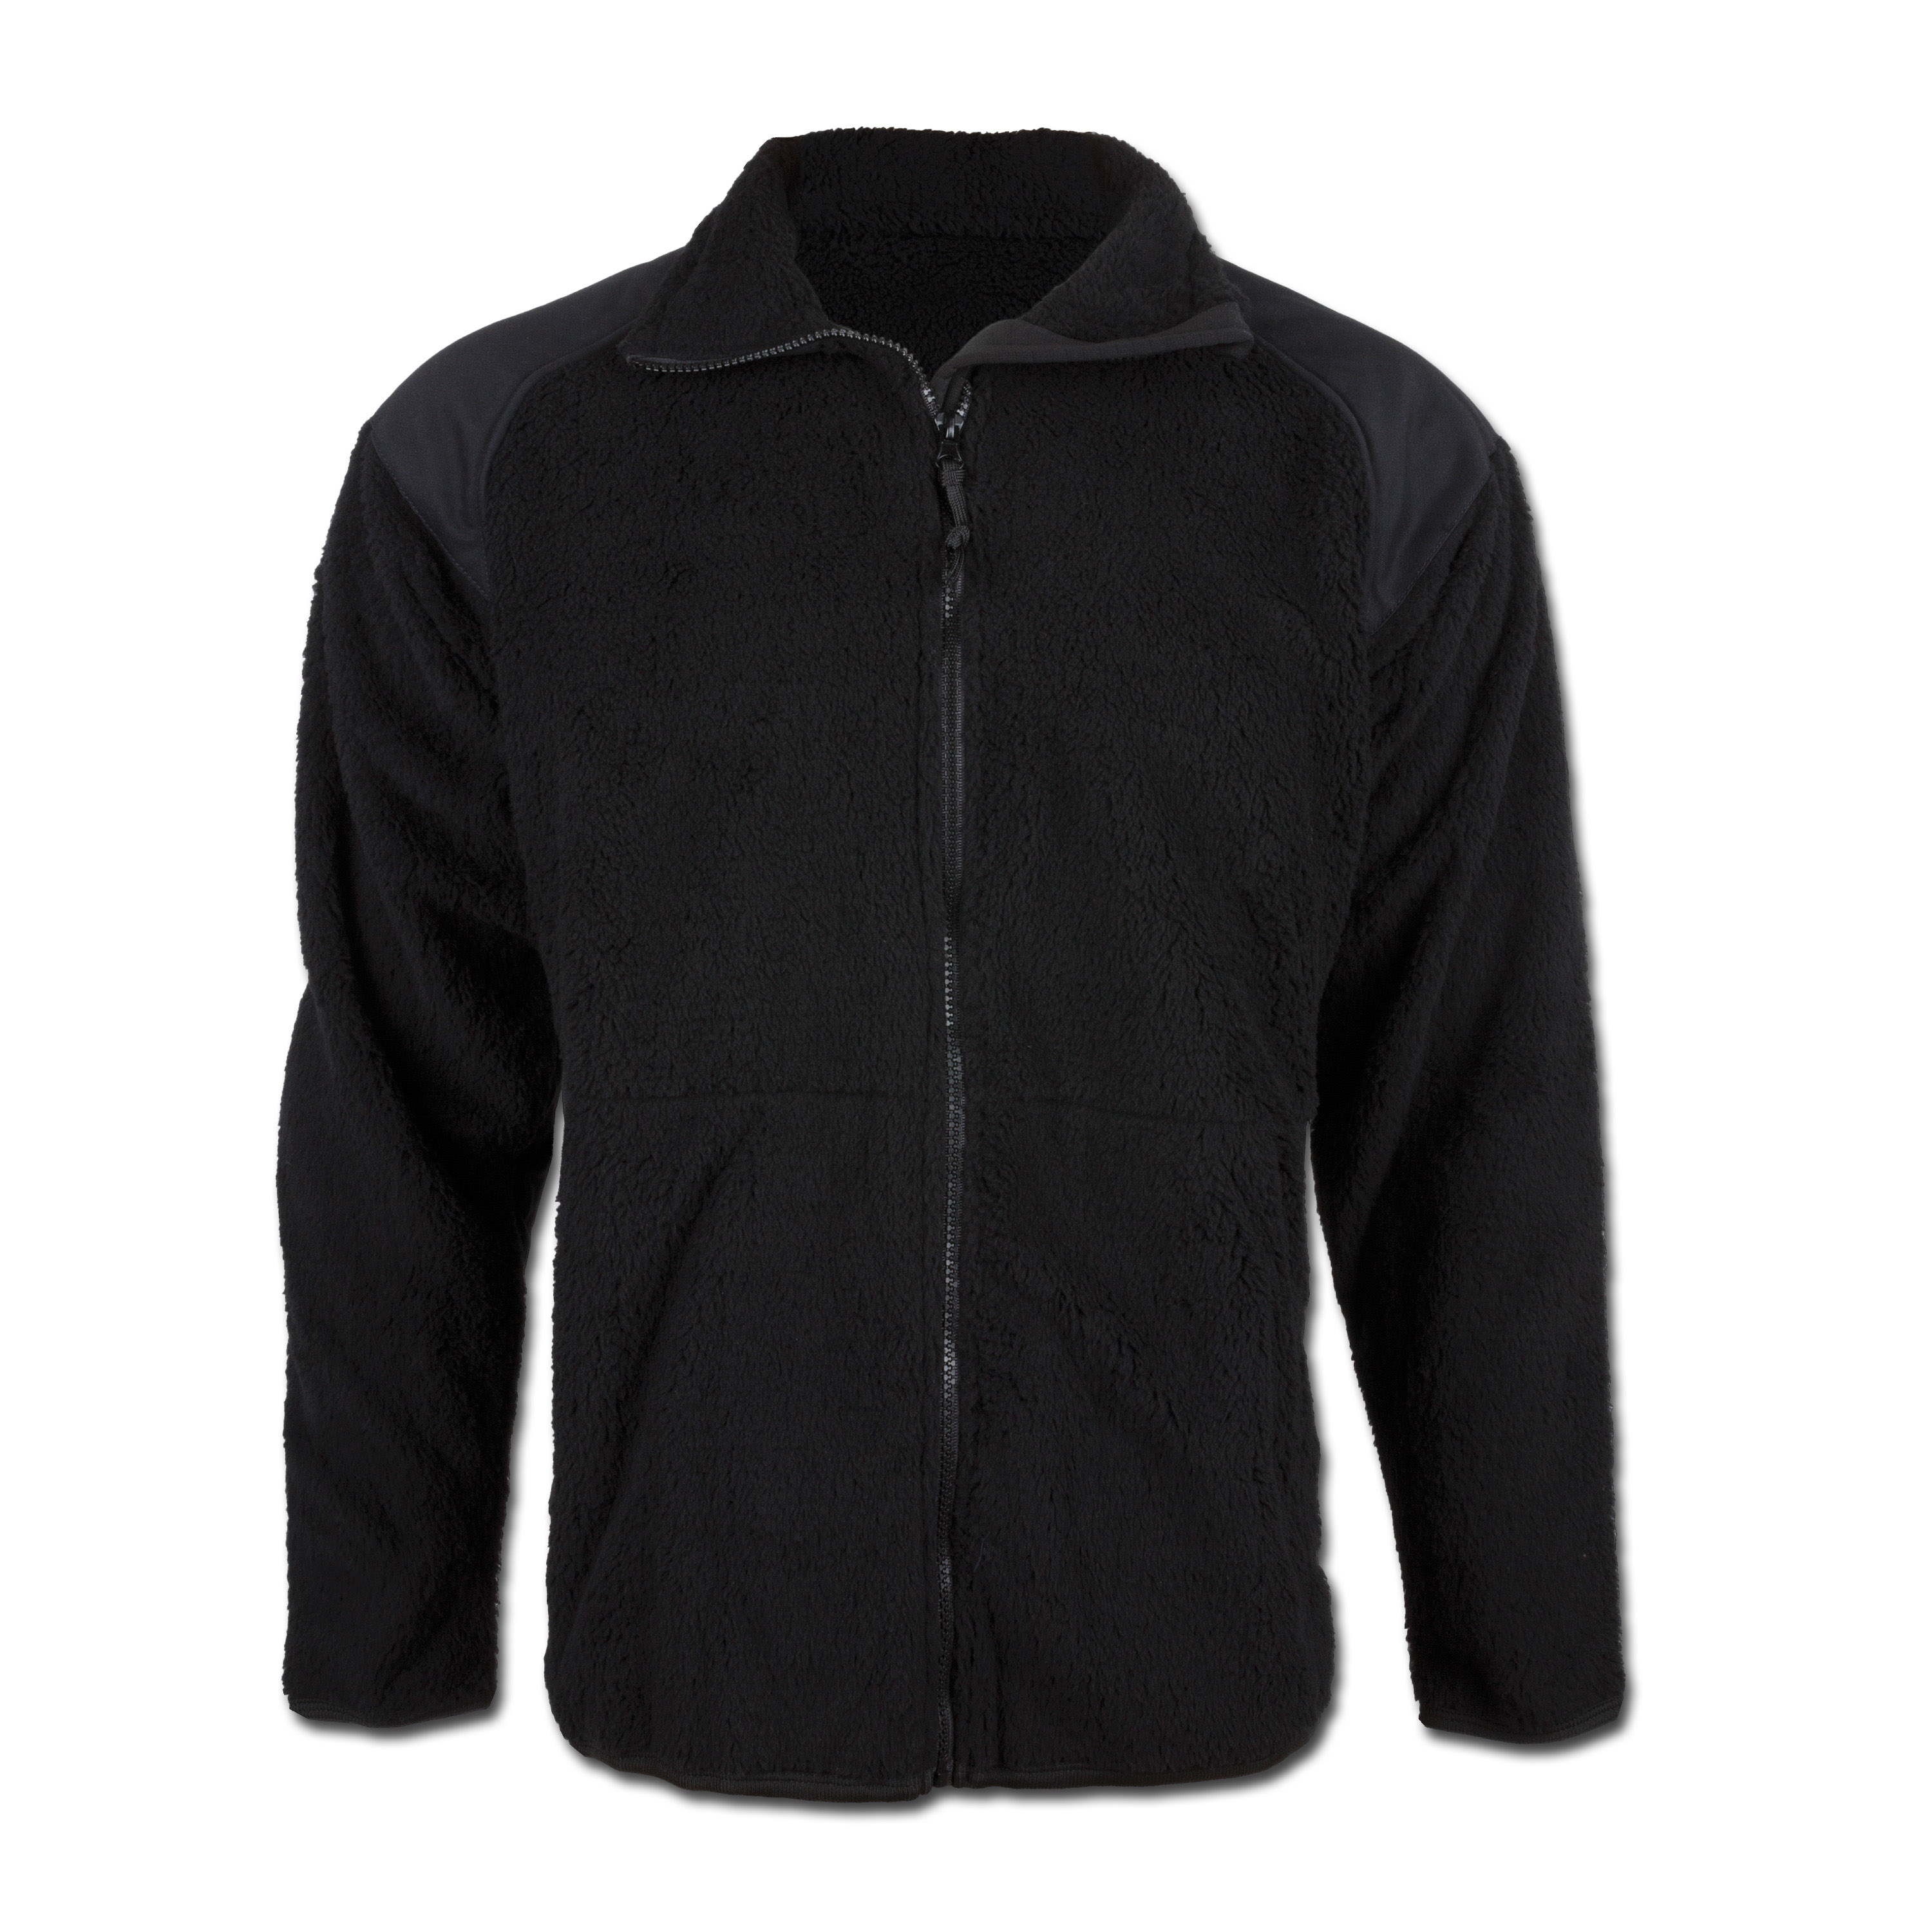 Fleece jacket GEN-III ECWCS Level-3 black